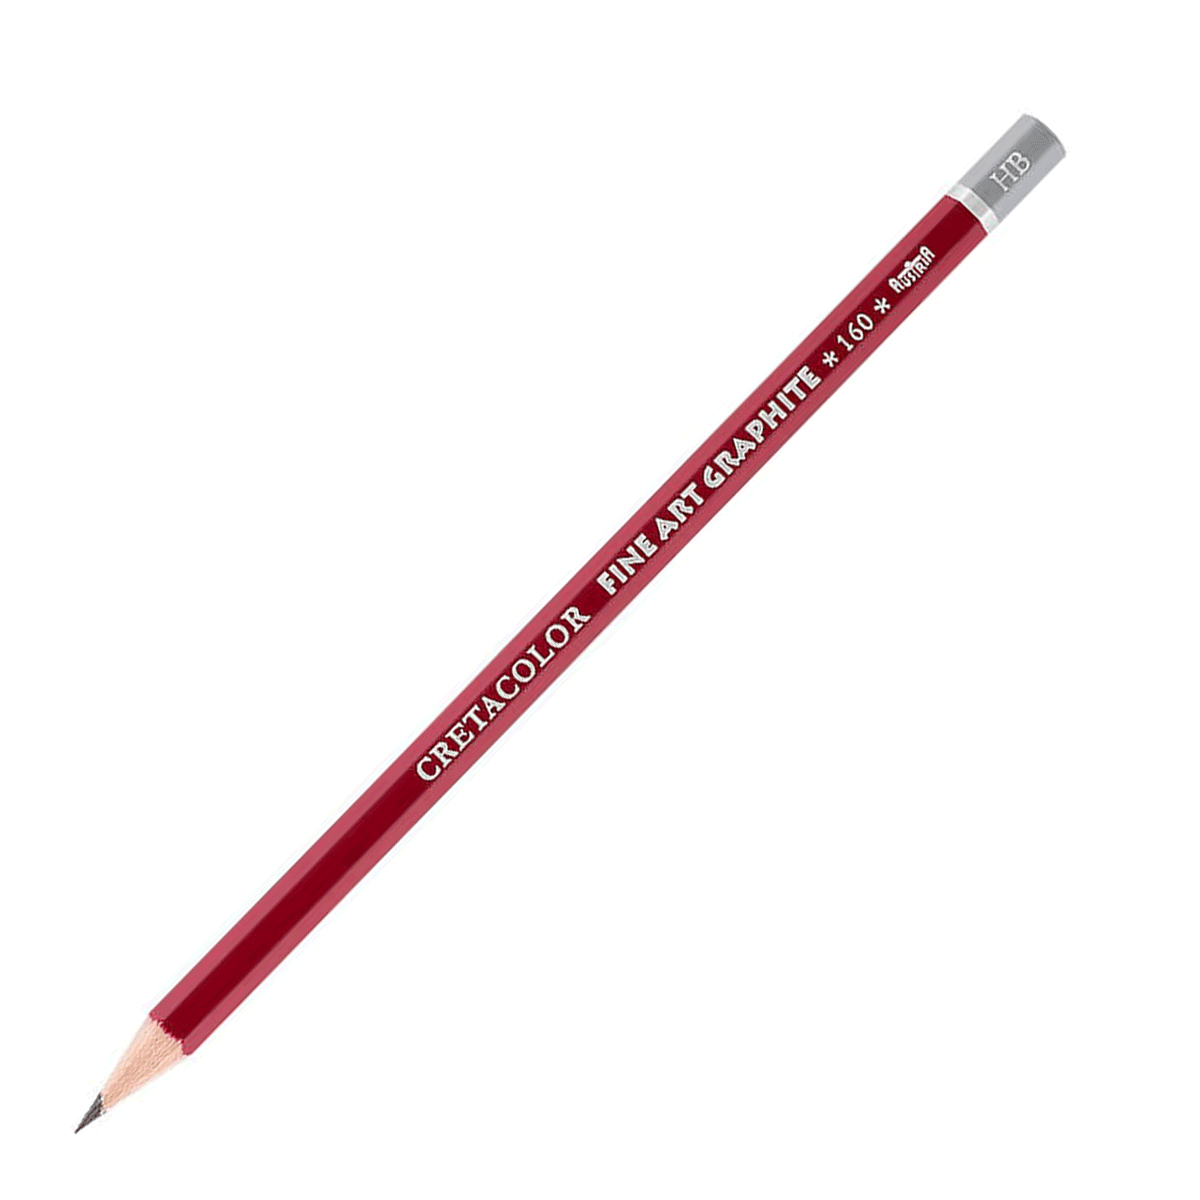 Cretacolor Fine Art Red Graphite Pencil - HB